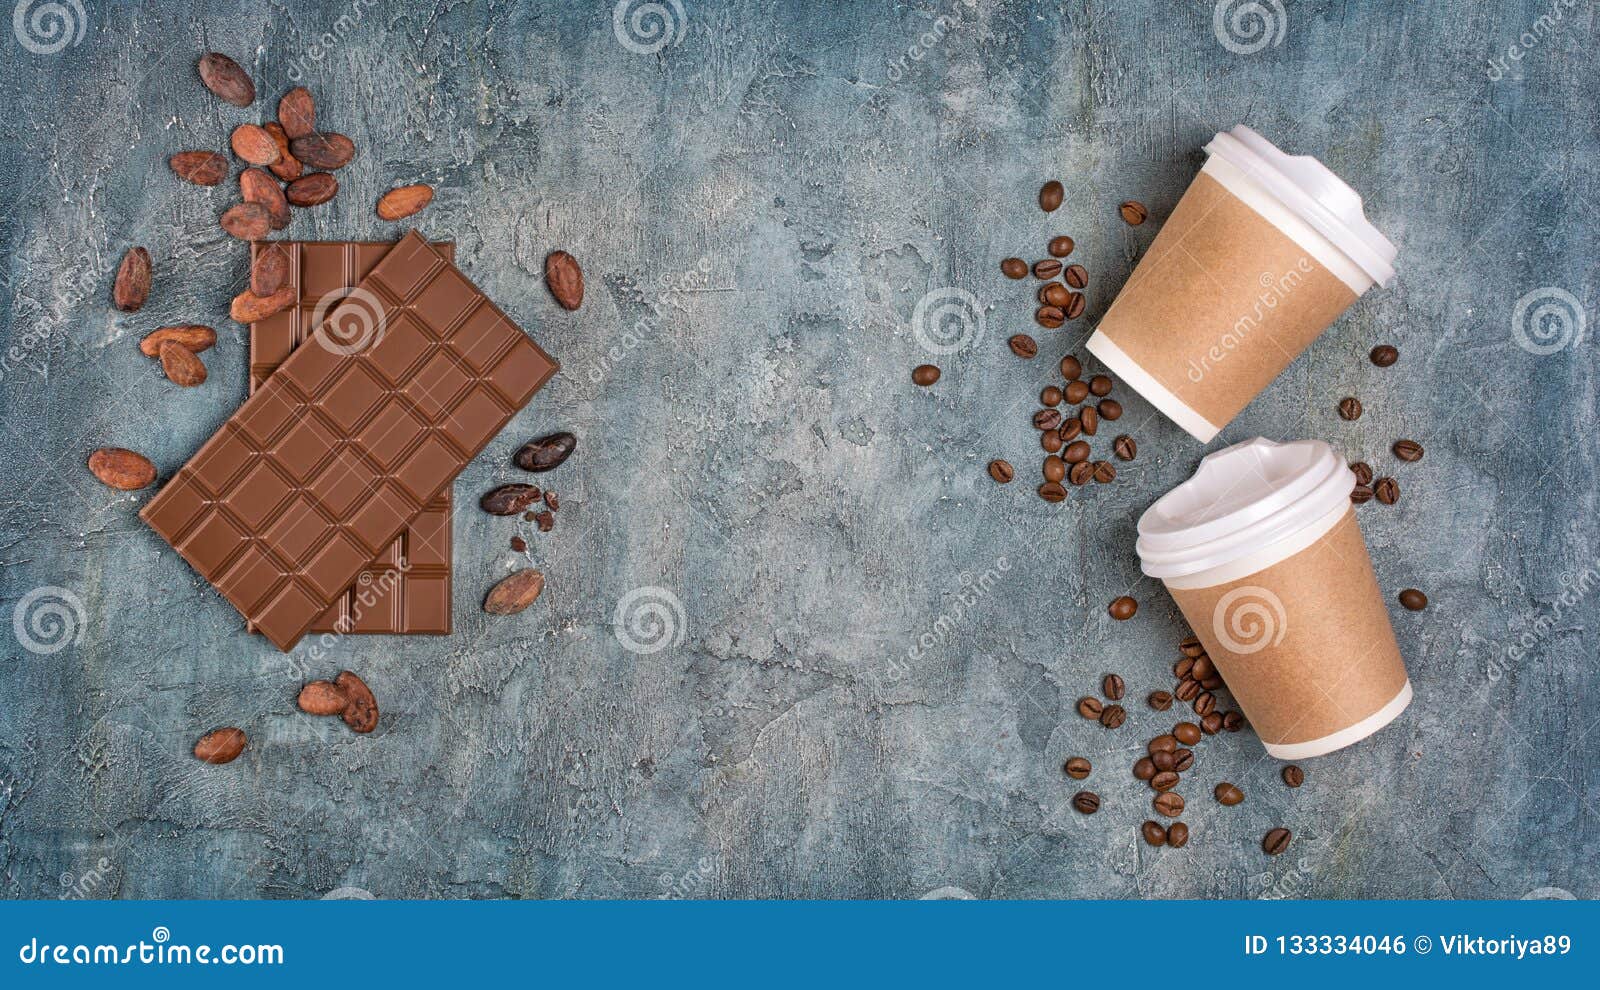 Maqueta de taza de café para llevar con granos de café